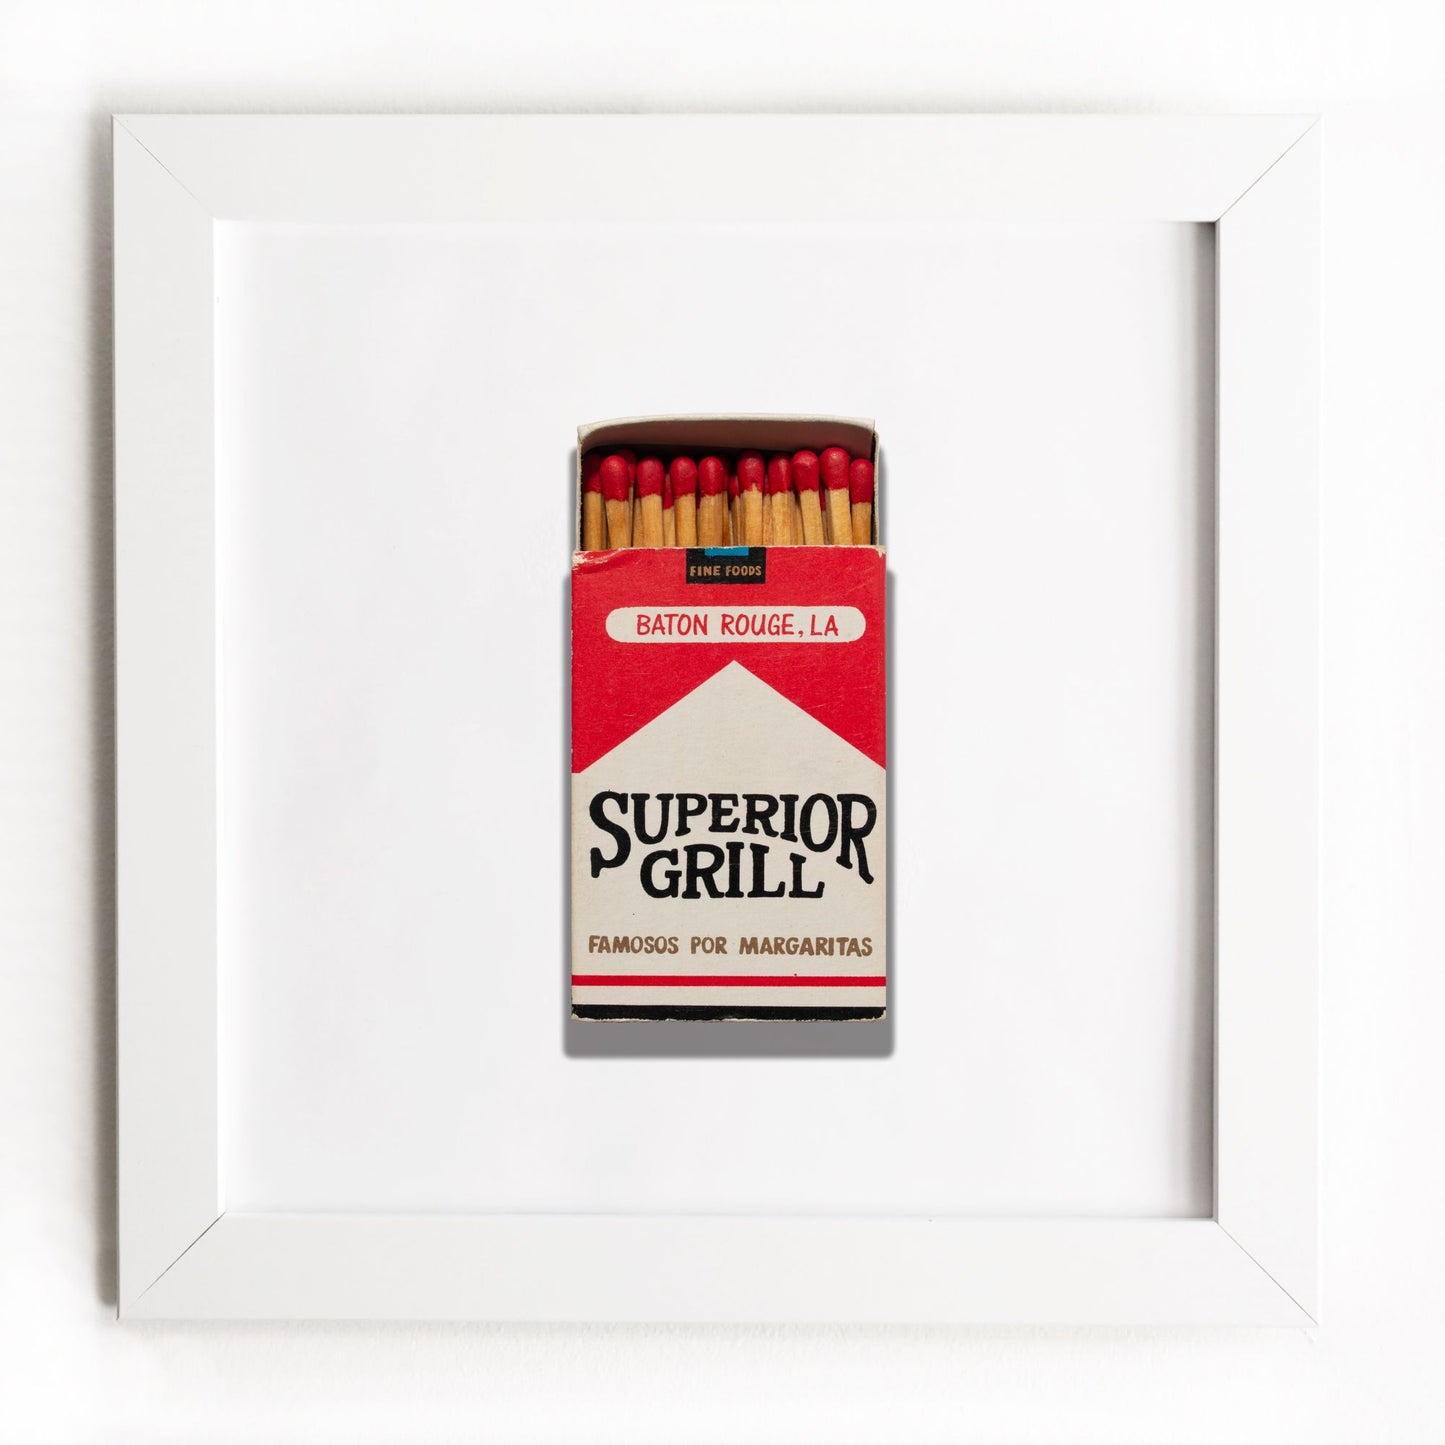 Superior Grill (Box)